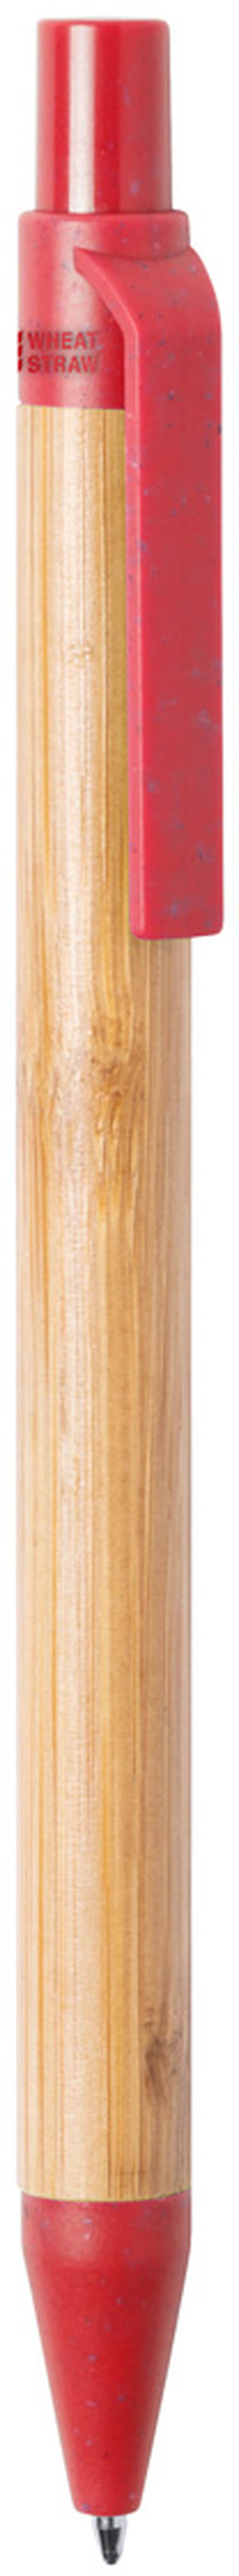 Bambusové kuličkové pero Roak